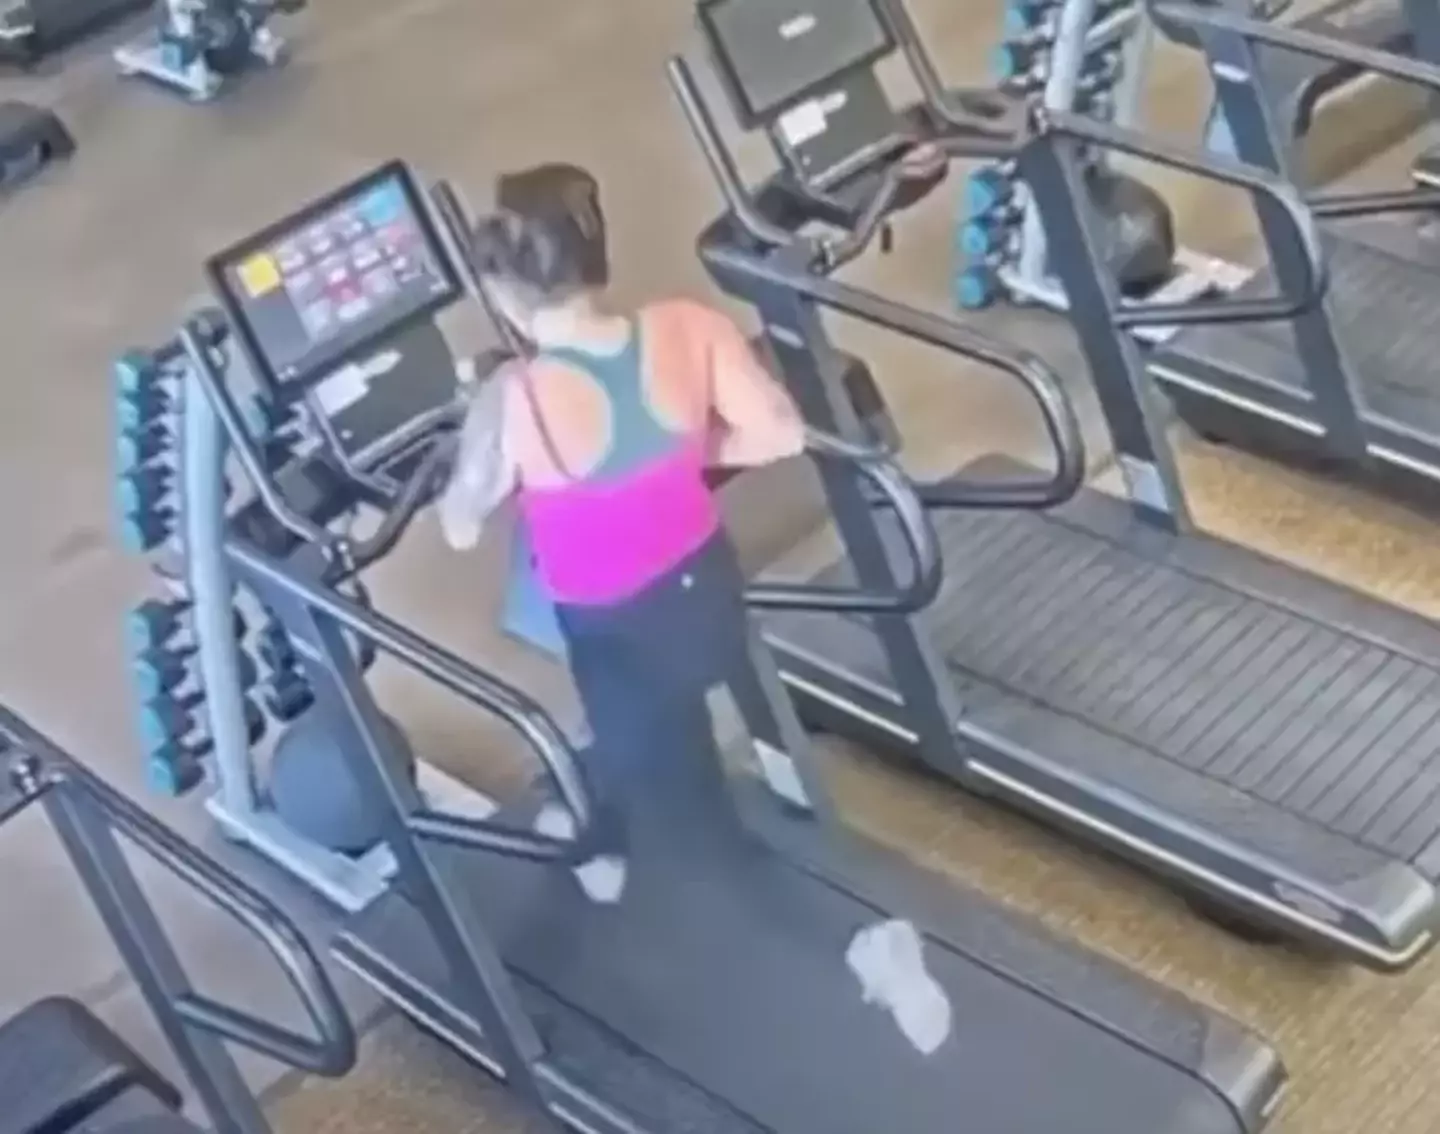 Alyssa regularly runs on the treadmill.